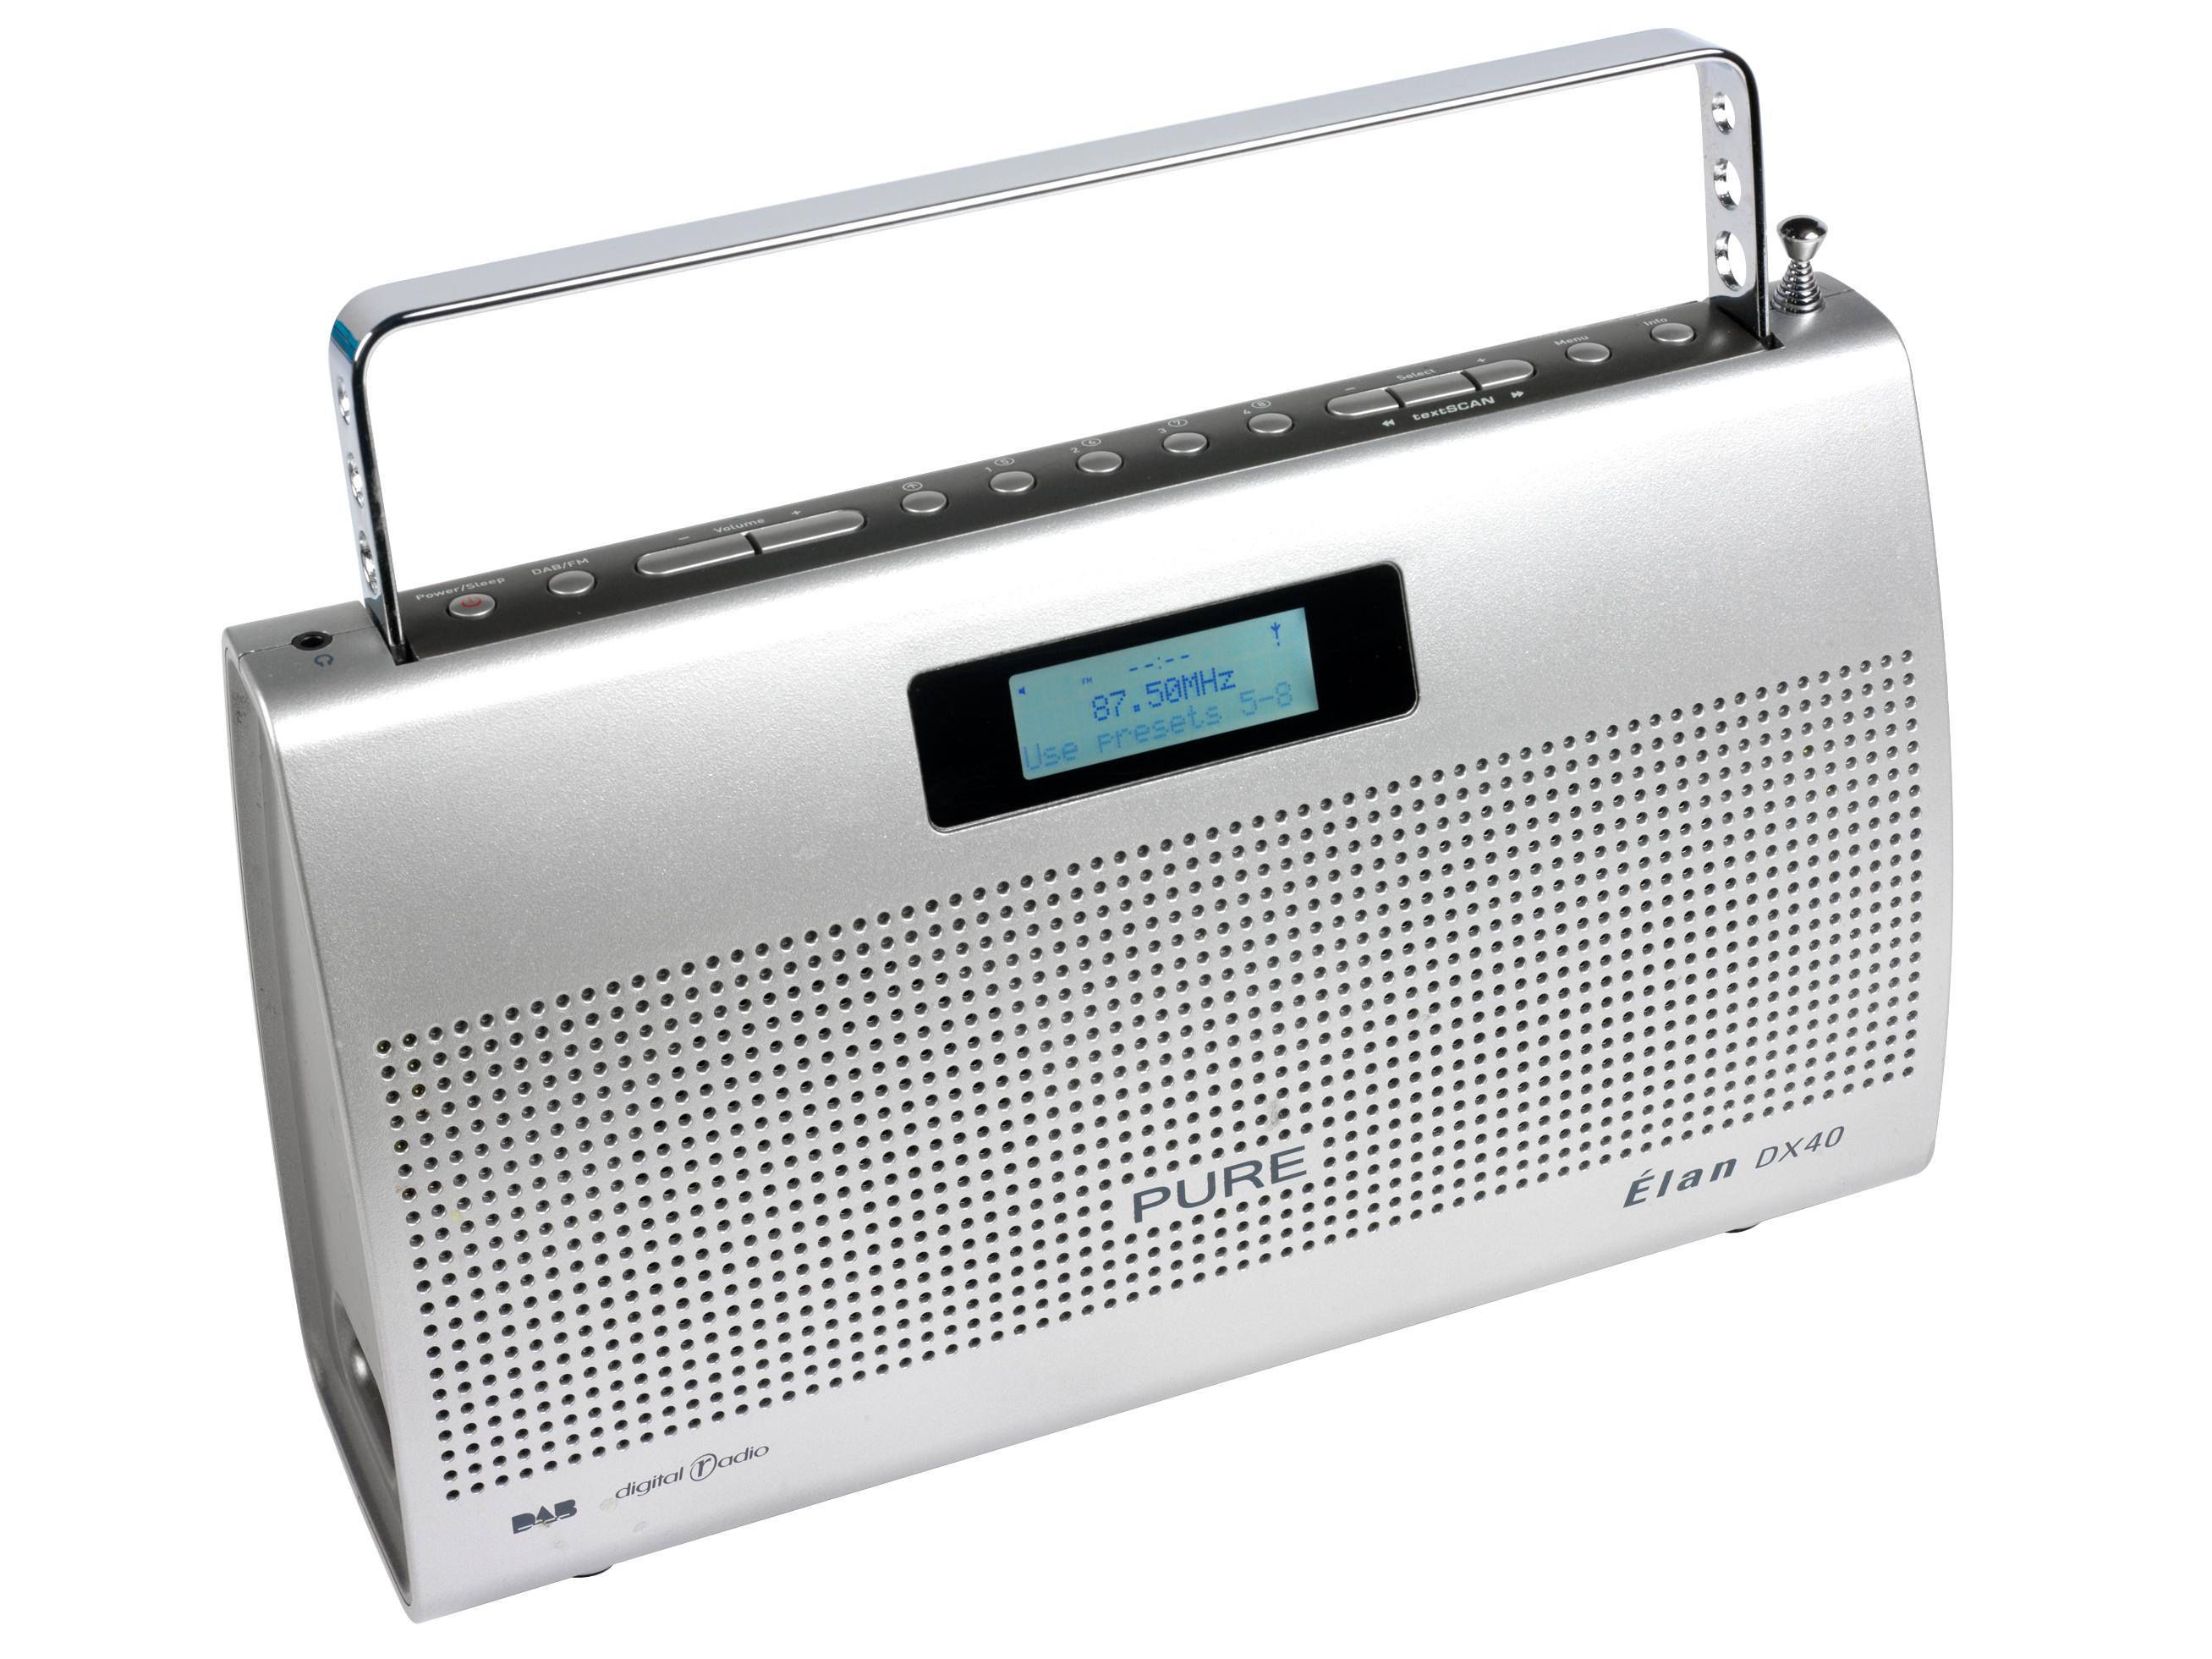 Pure Elan DX40 DAB Radio portátil muy limpio Funcionando Perfectamente fuente de alimentación 